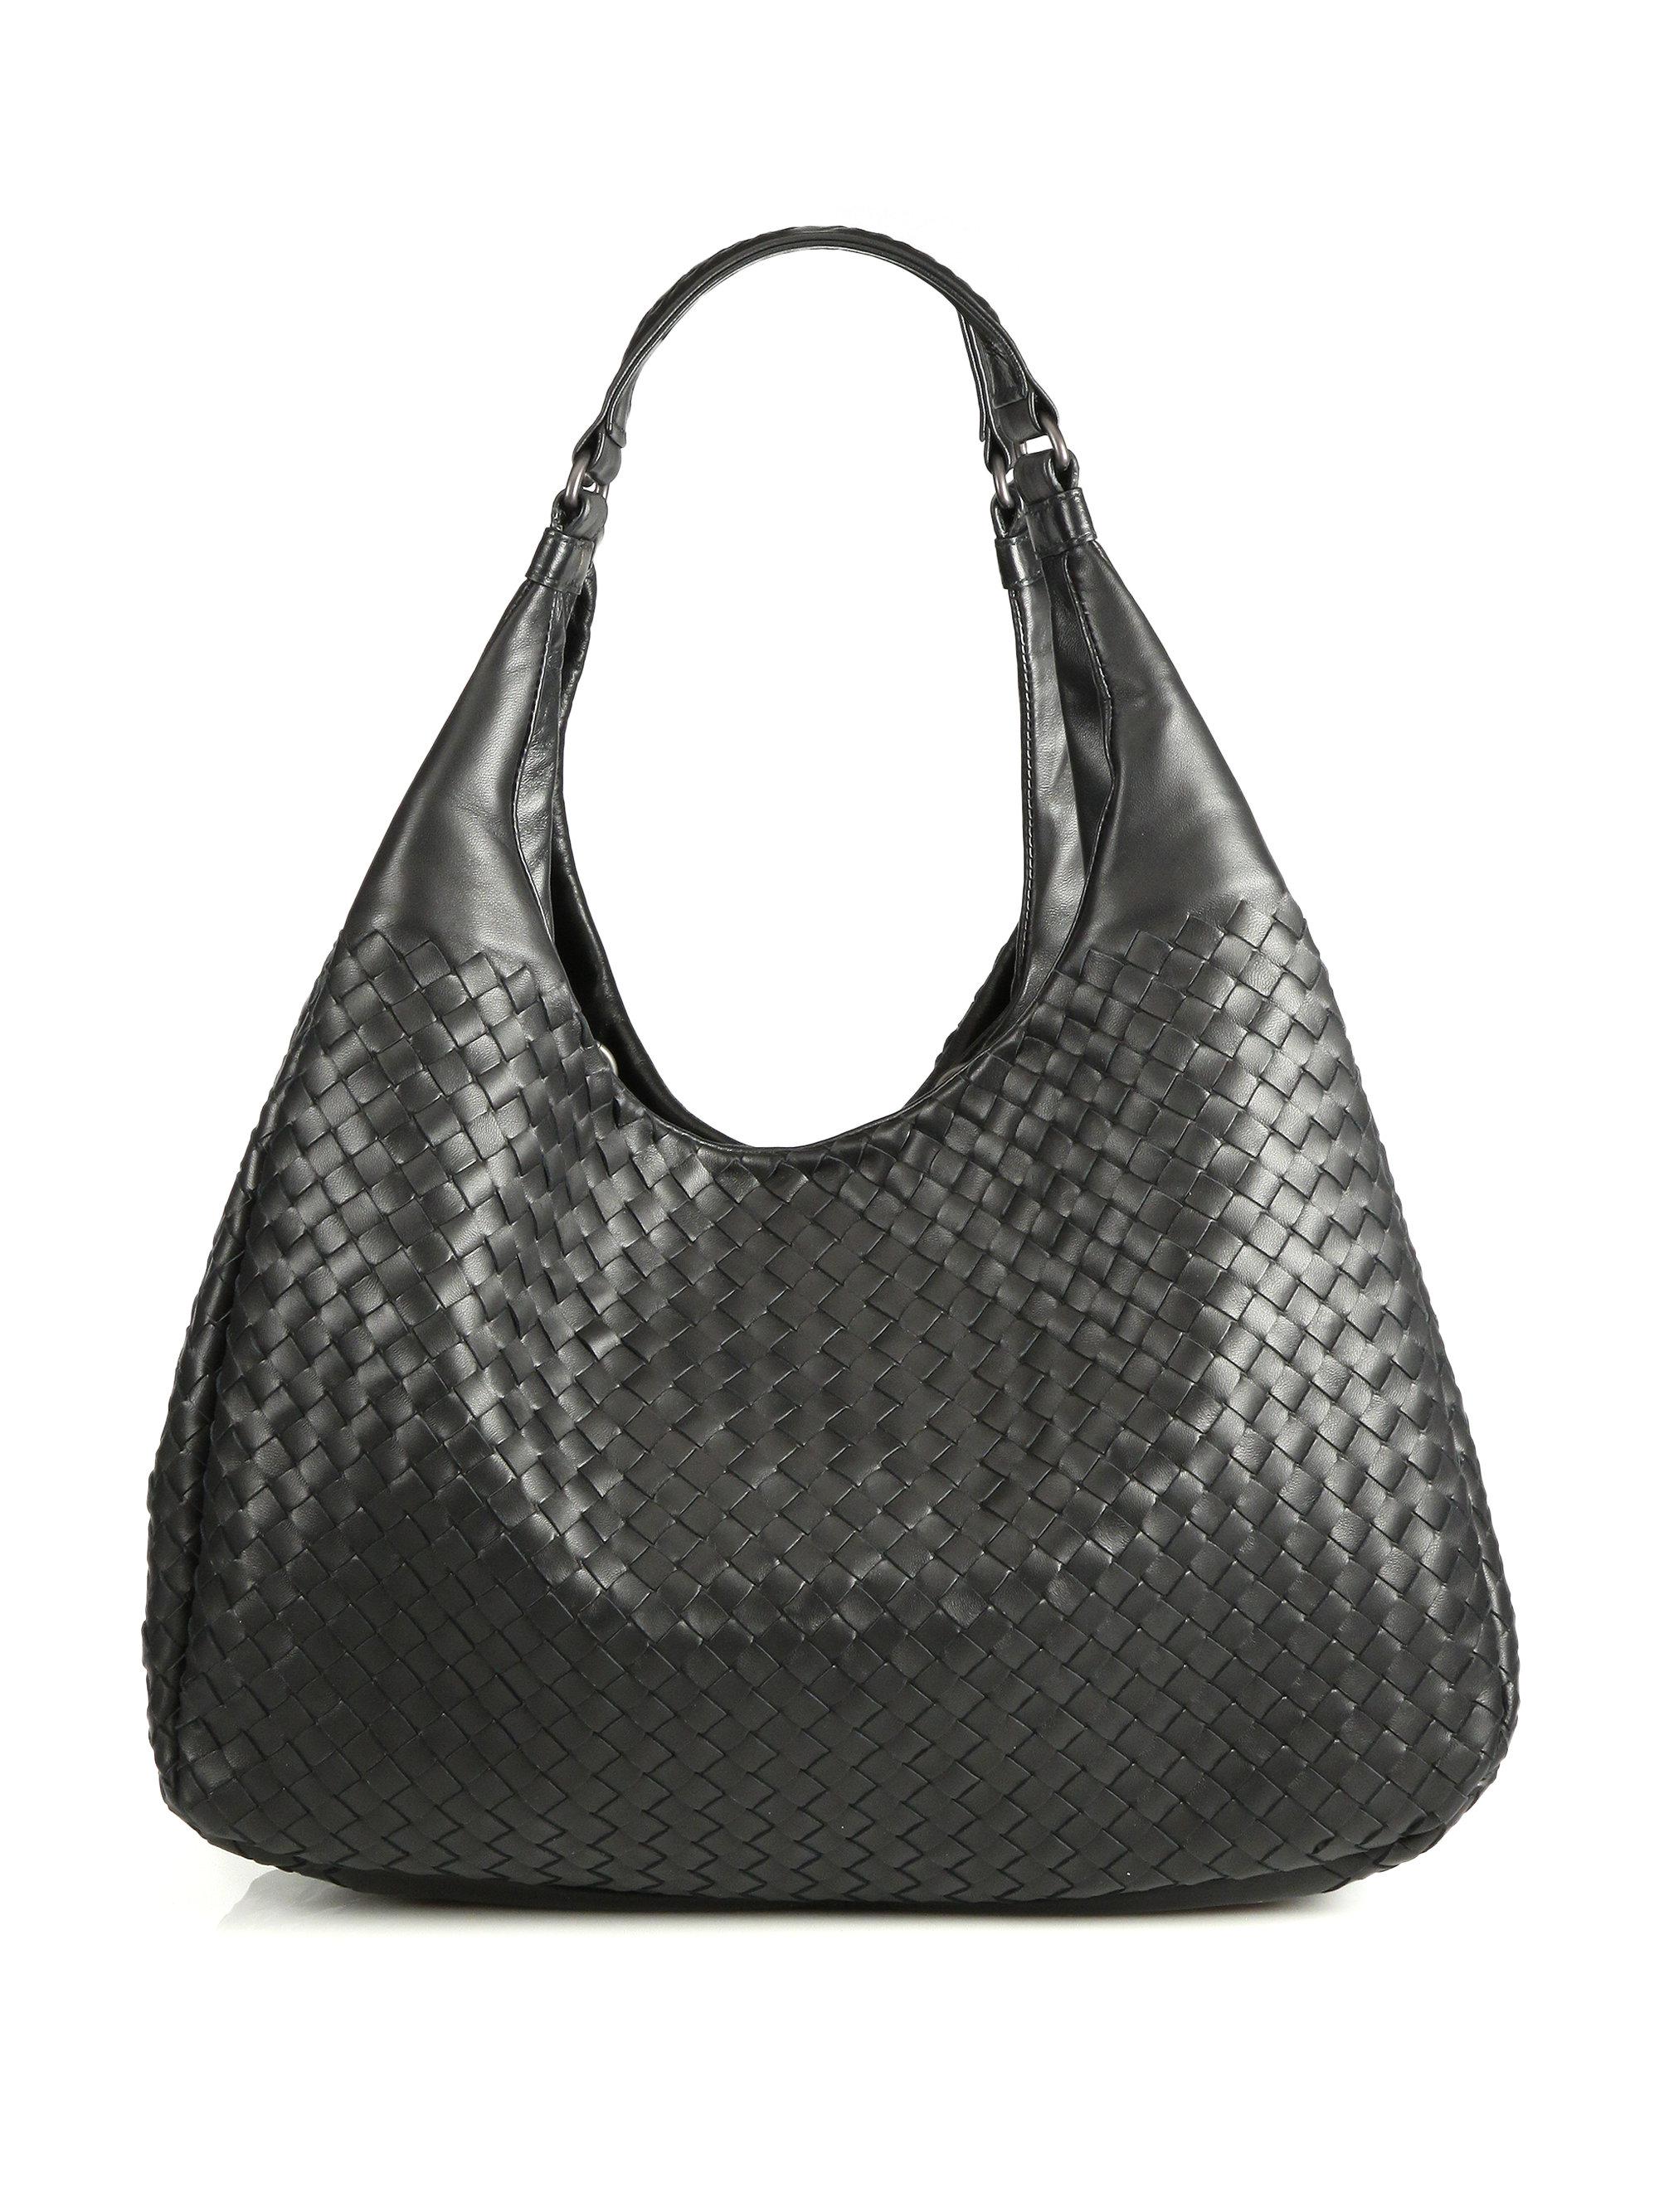 Bottega Veneta Leather Large Campana Hobo Bag in Black - Lyst